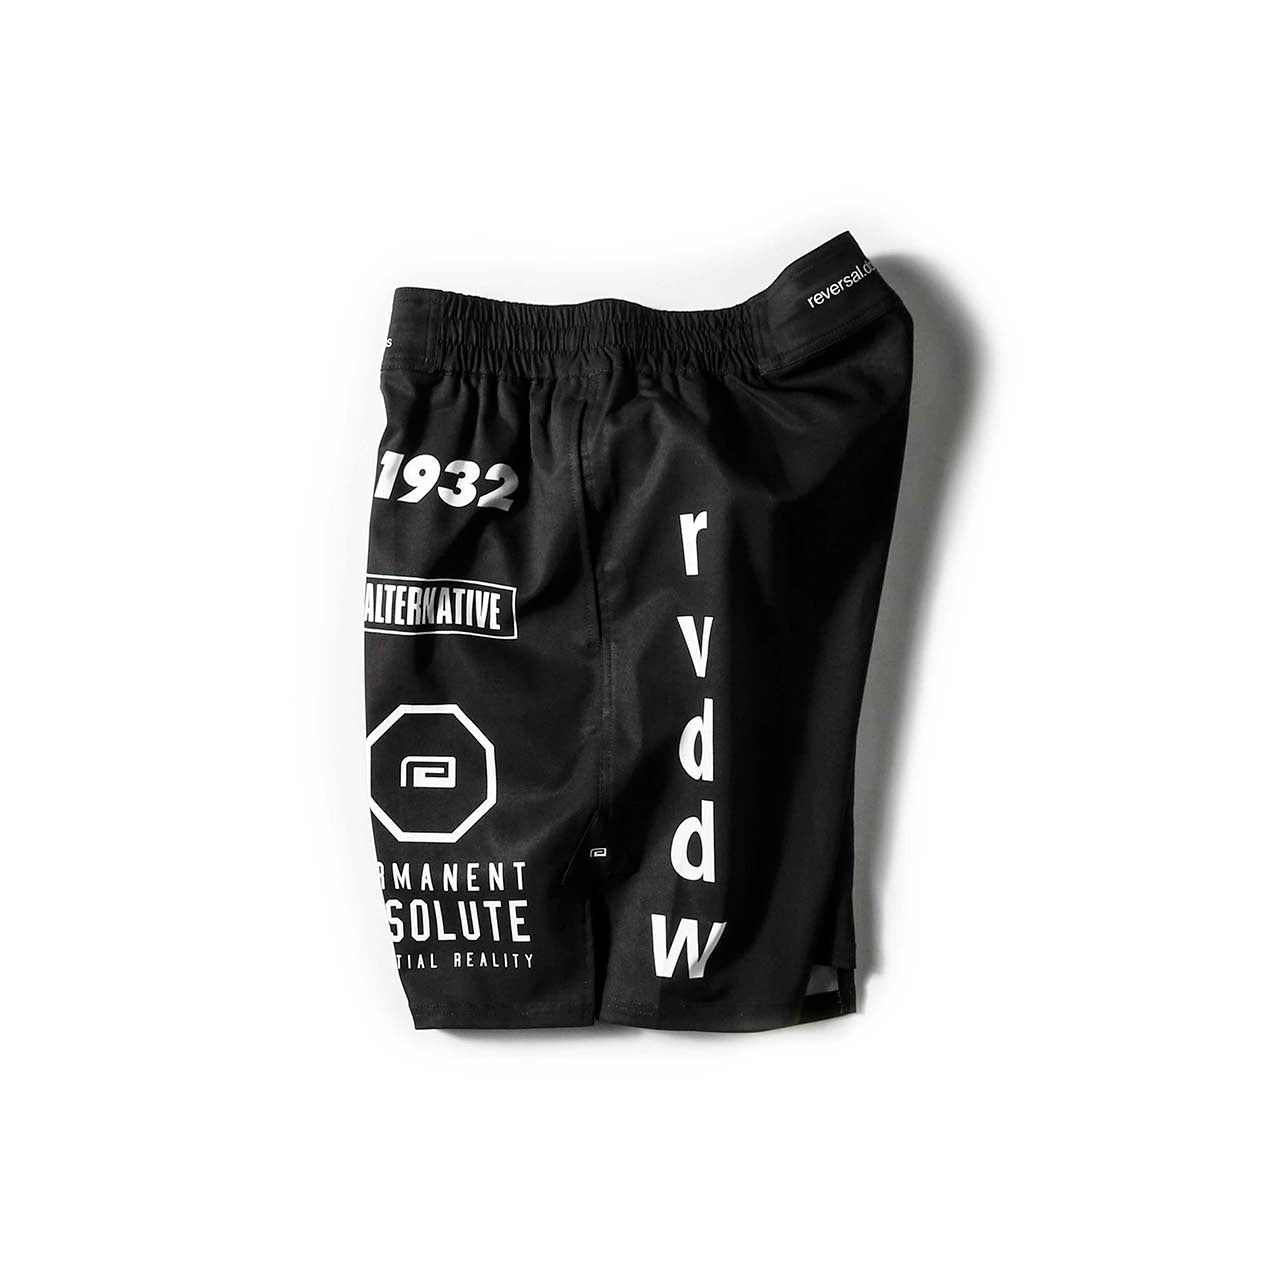 Multi Logo Pocket Shorts-Reversal RVDDW-ChokeSports